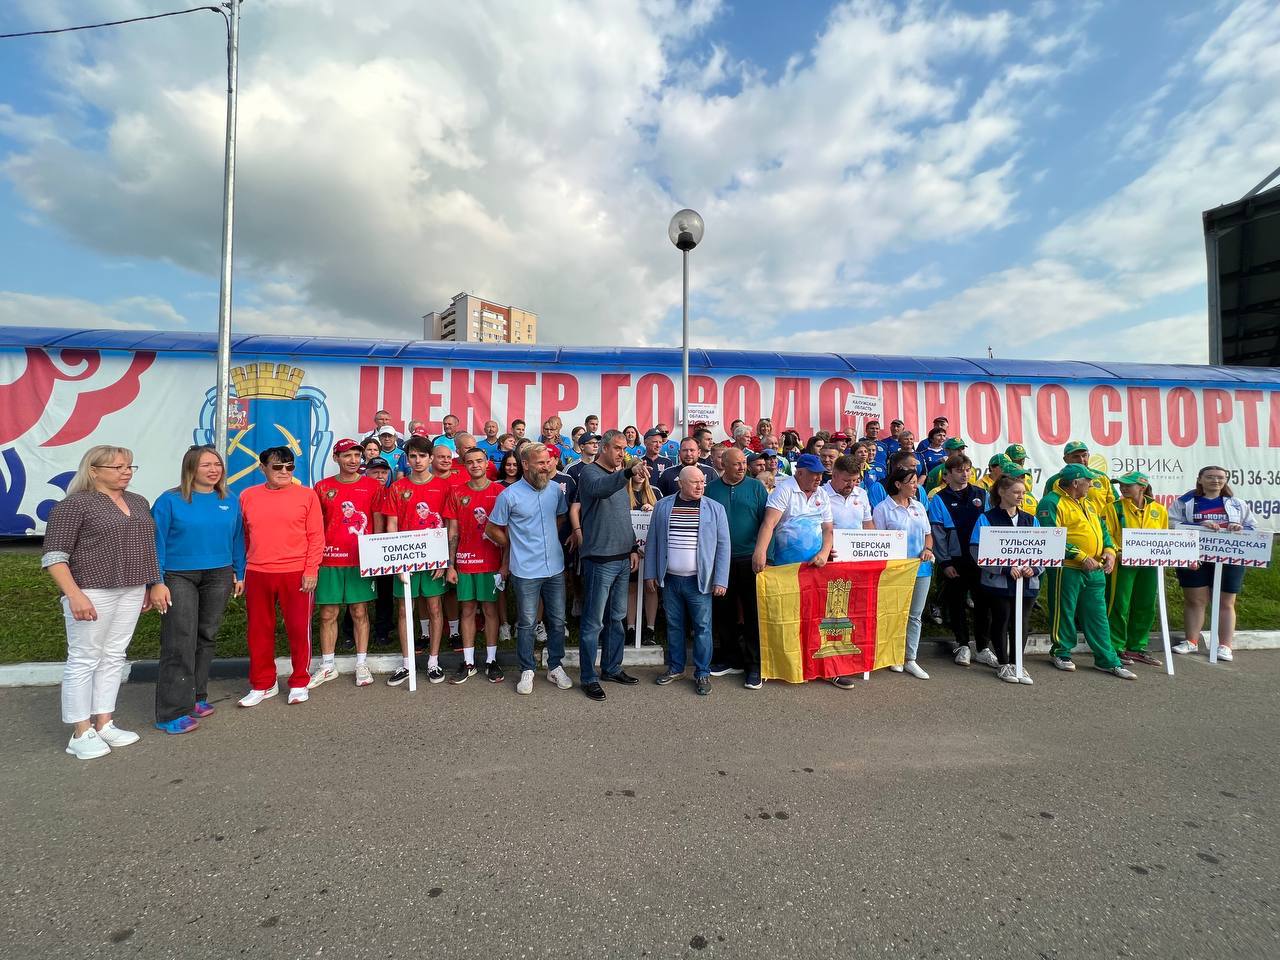  В Подольске проходит Кубок России по городошному спорту среди мужчин и женщин